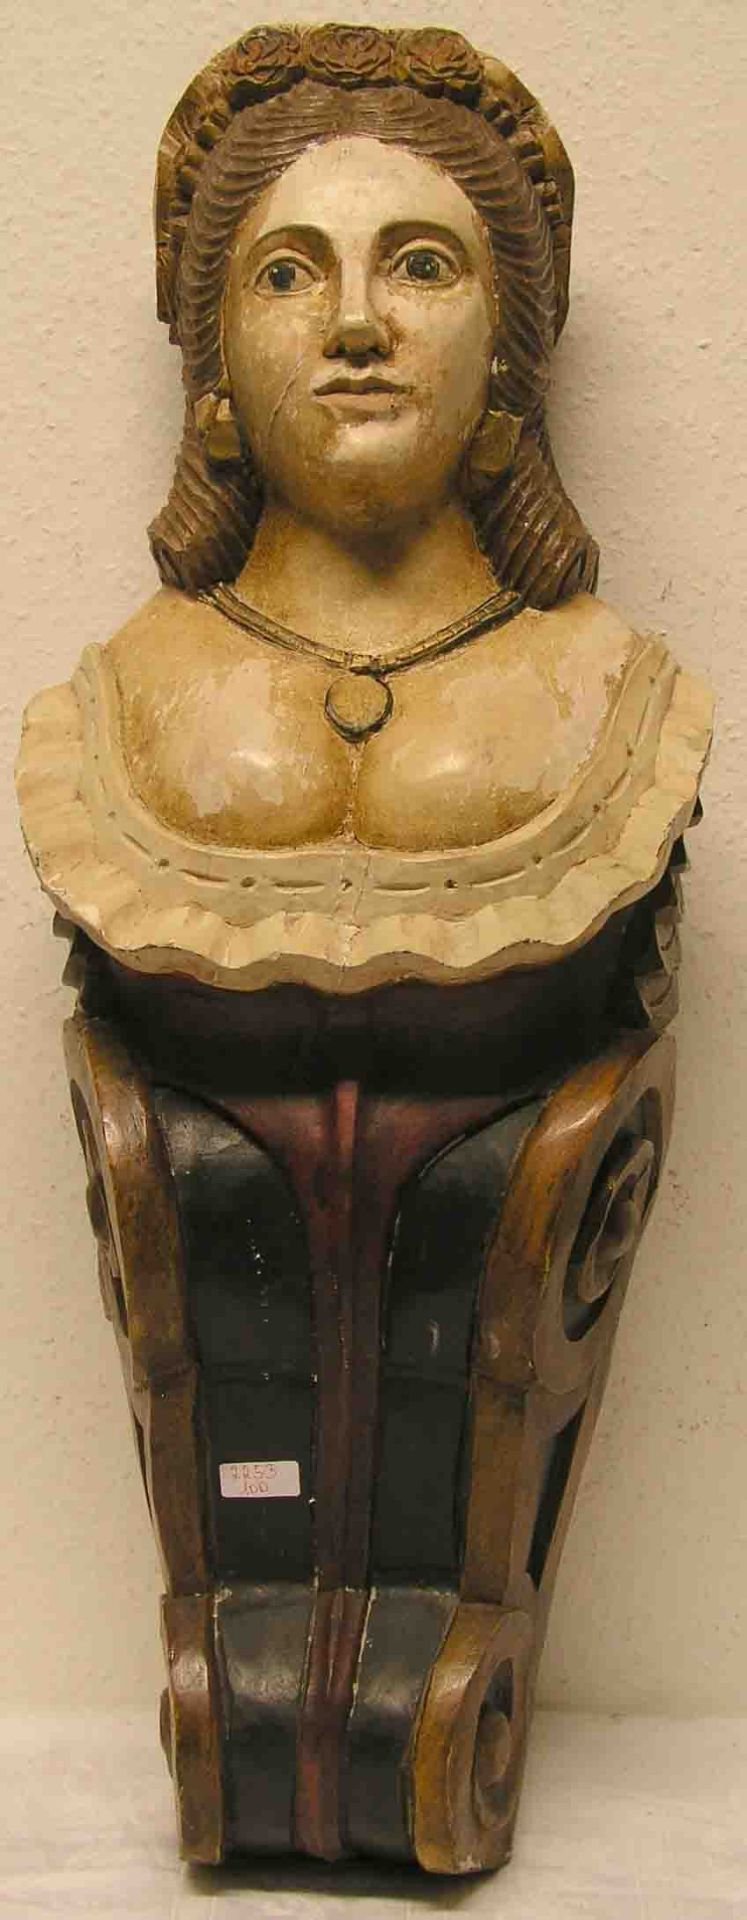 Gallionsfigur. 19. Jh. Nussbaum geschnitzt. Halfigurartige Darstellung einer jungen Frau,farbig